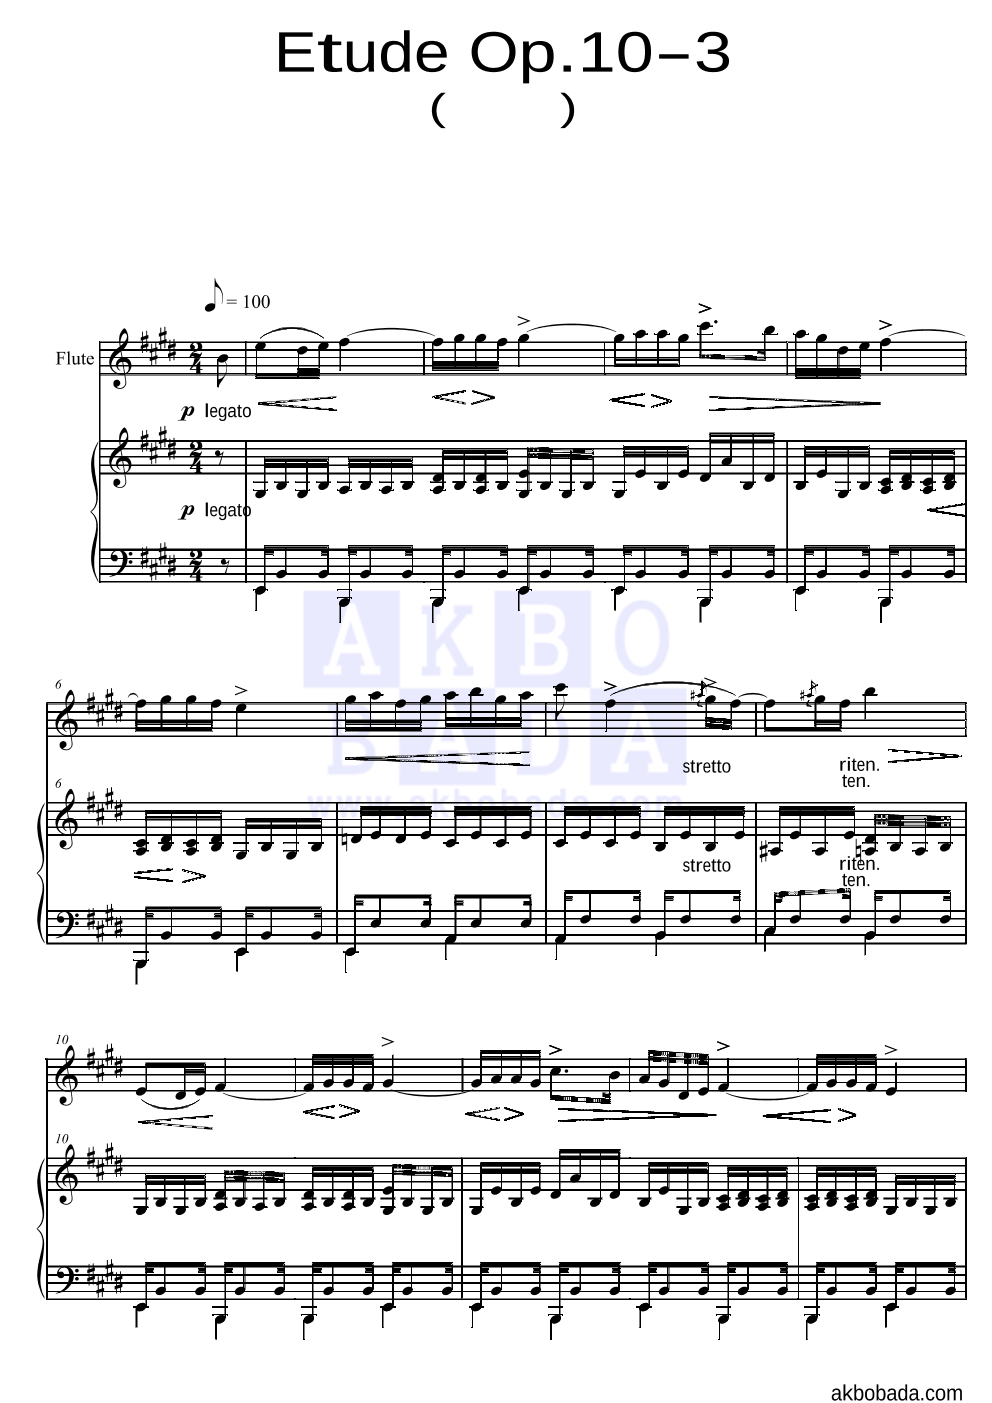 쇼팽 - Etude Op.10 No.3(이별곡) 플룻&피아노 악보 